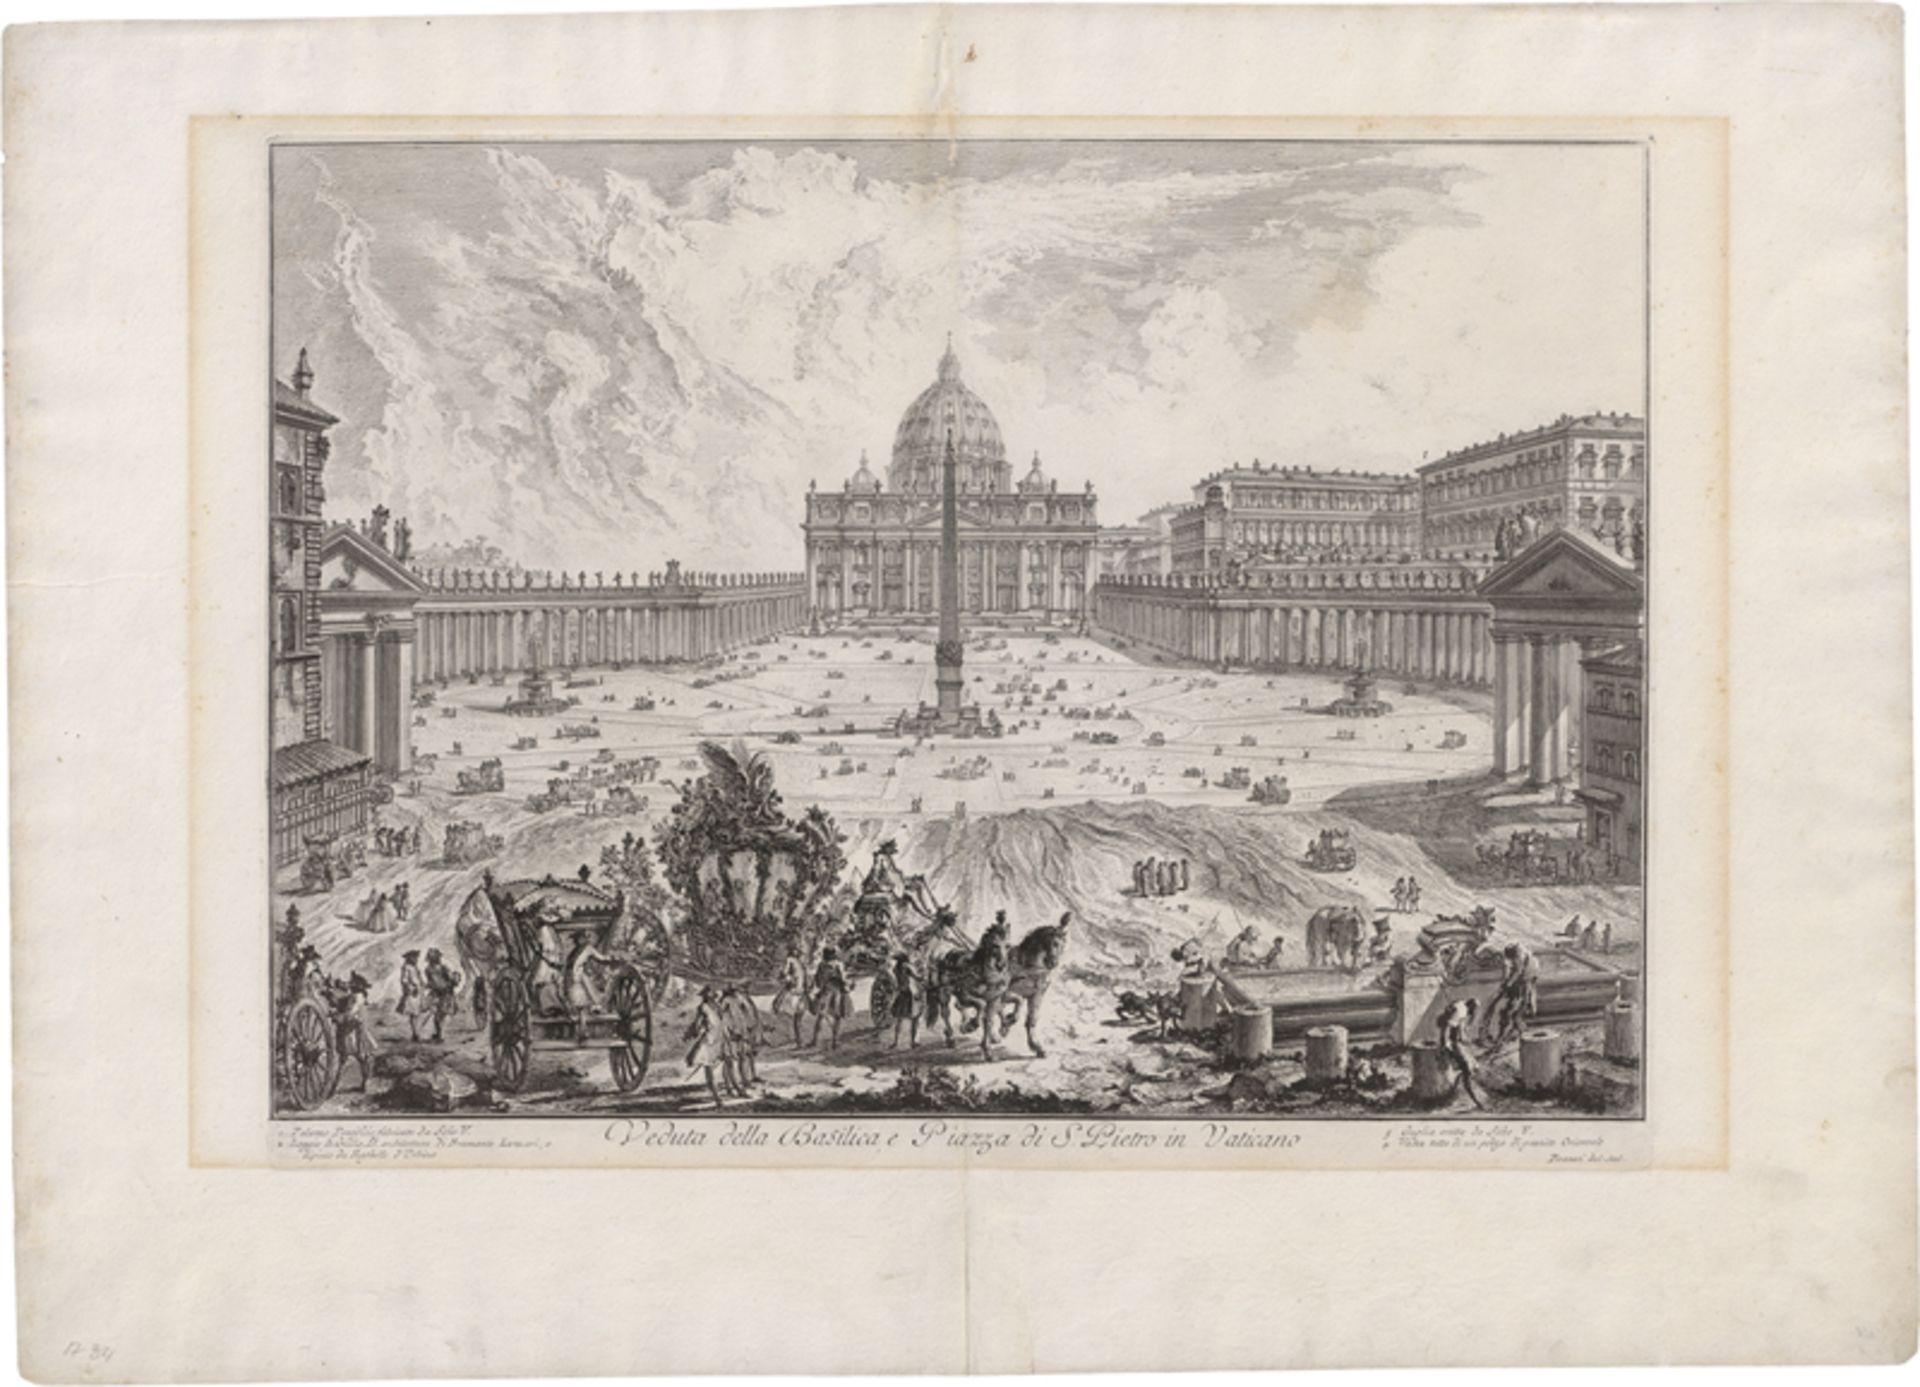 Piranesi, Giovanni Battista: Veduta della Basilica e Piazza di San Pietro in Vaticano